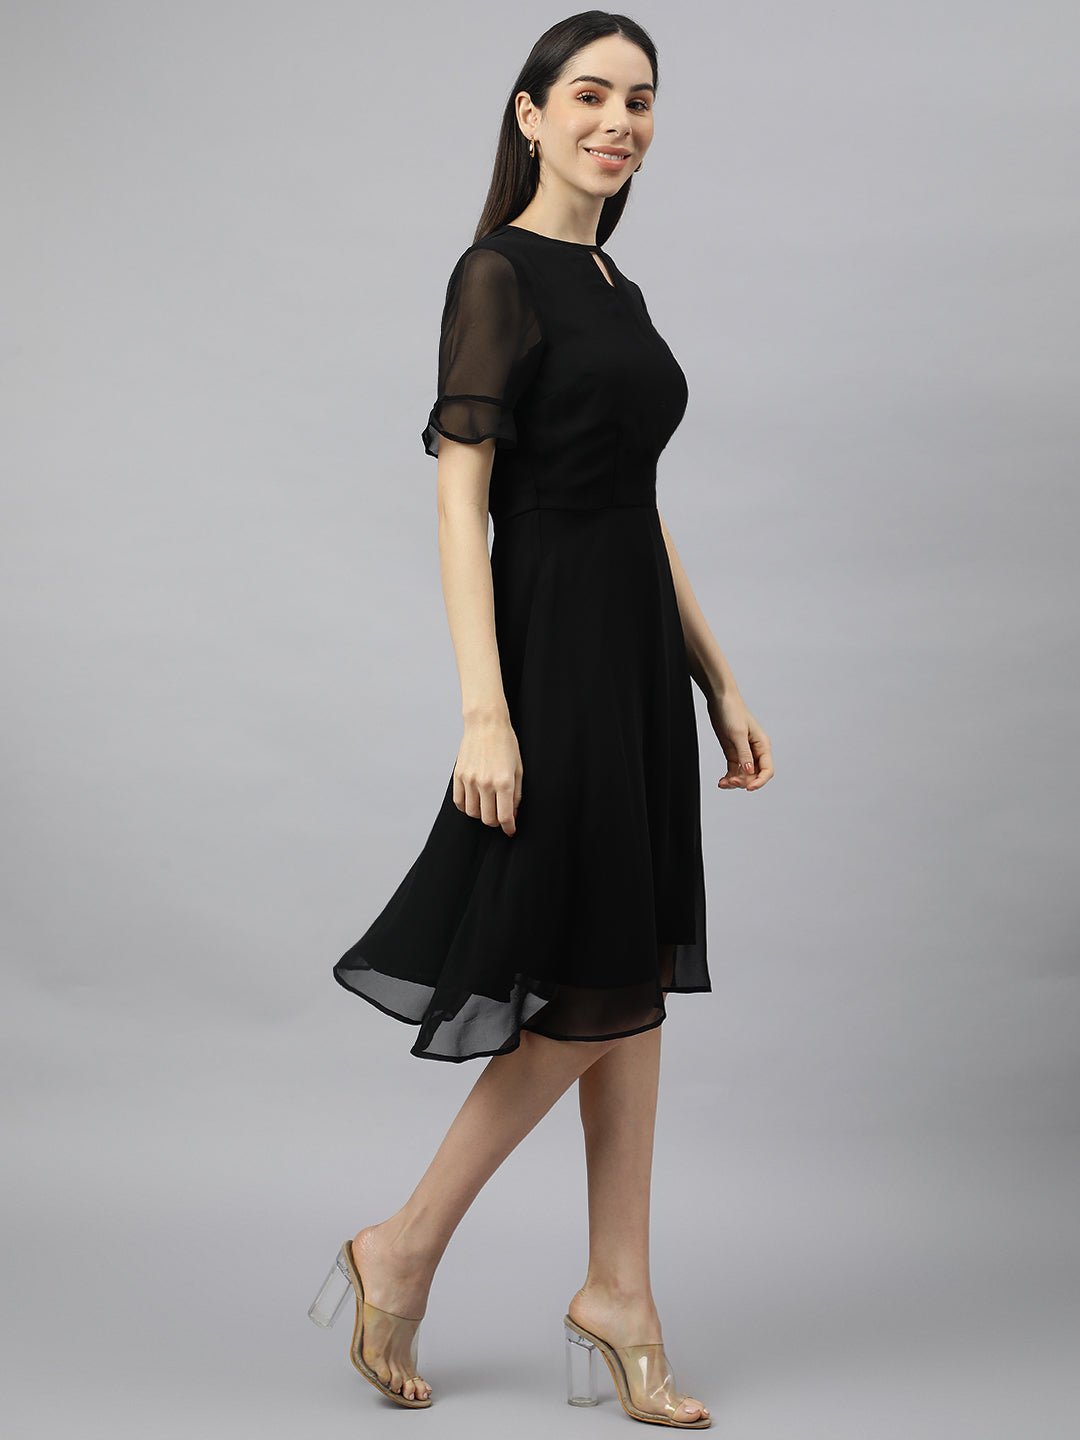 Valbone Women’s Black Georgette Floral Printed Knee Length One Piece Dress